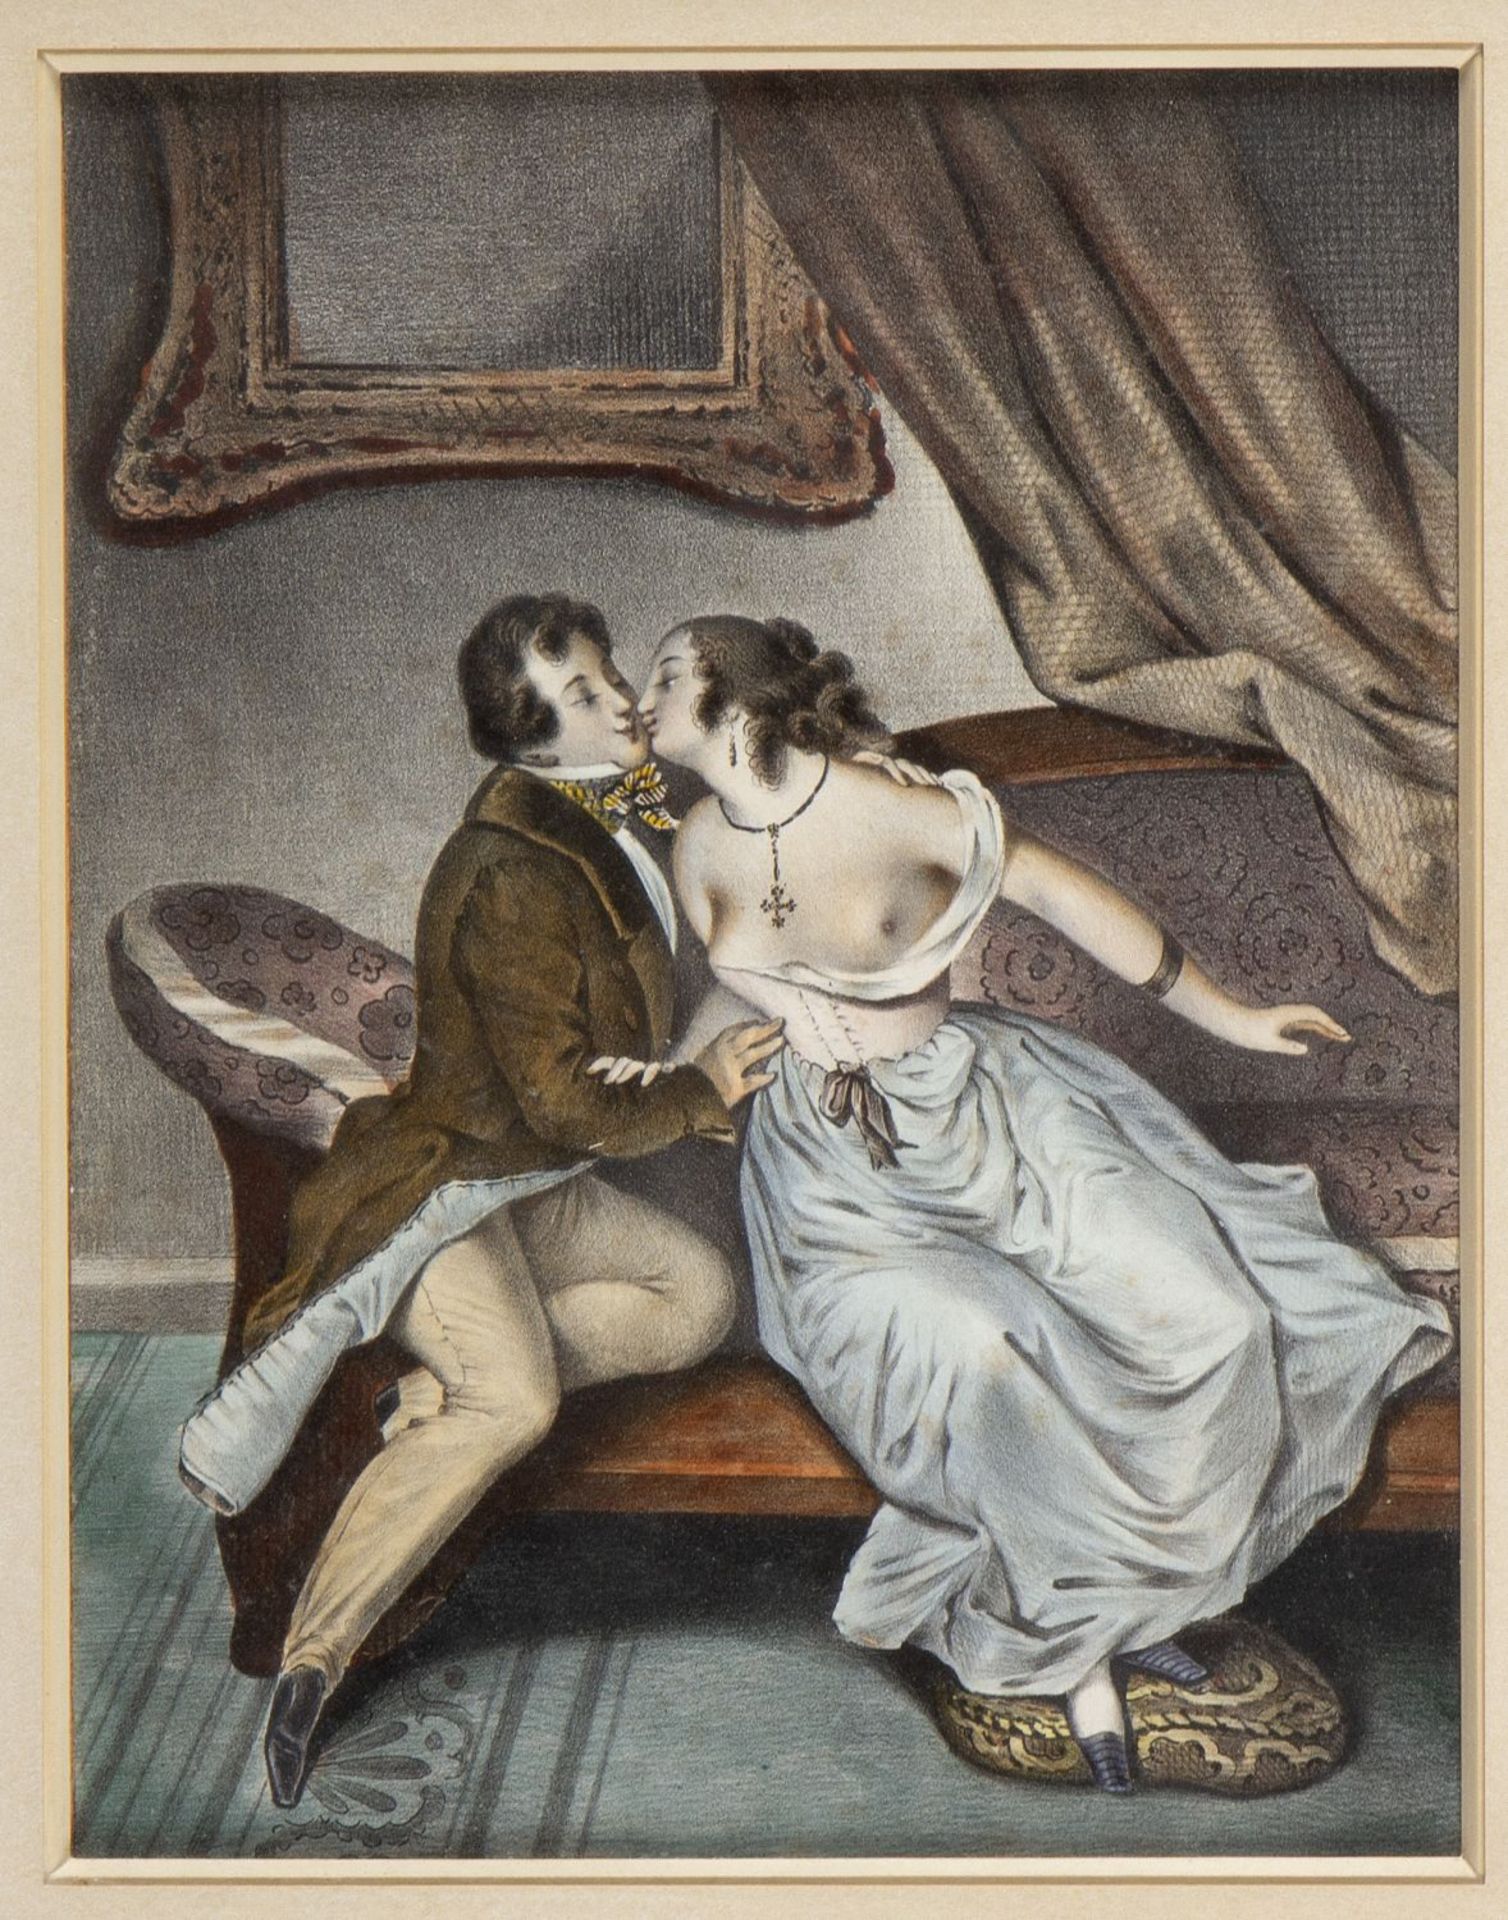 Unbekannt, Ende 19. Jh. Der Kuss. Schattenriss von Johann W. Goethe. 1 kol. Radierung. 1 Scherenschn - Image 2 of 3